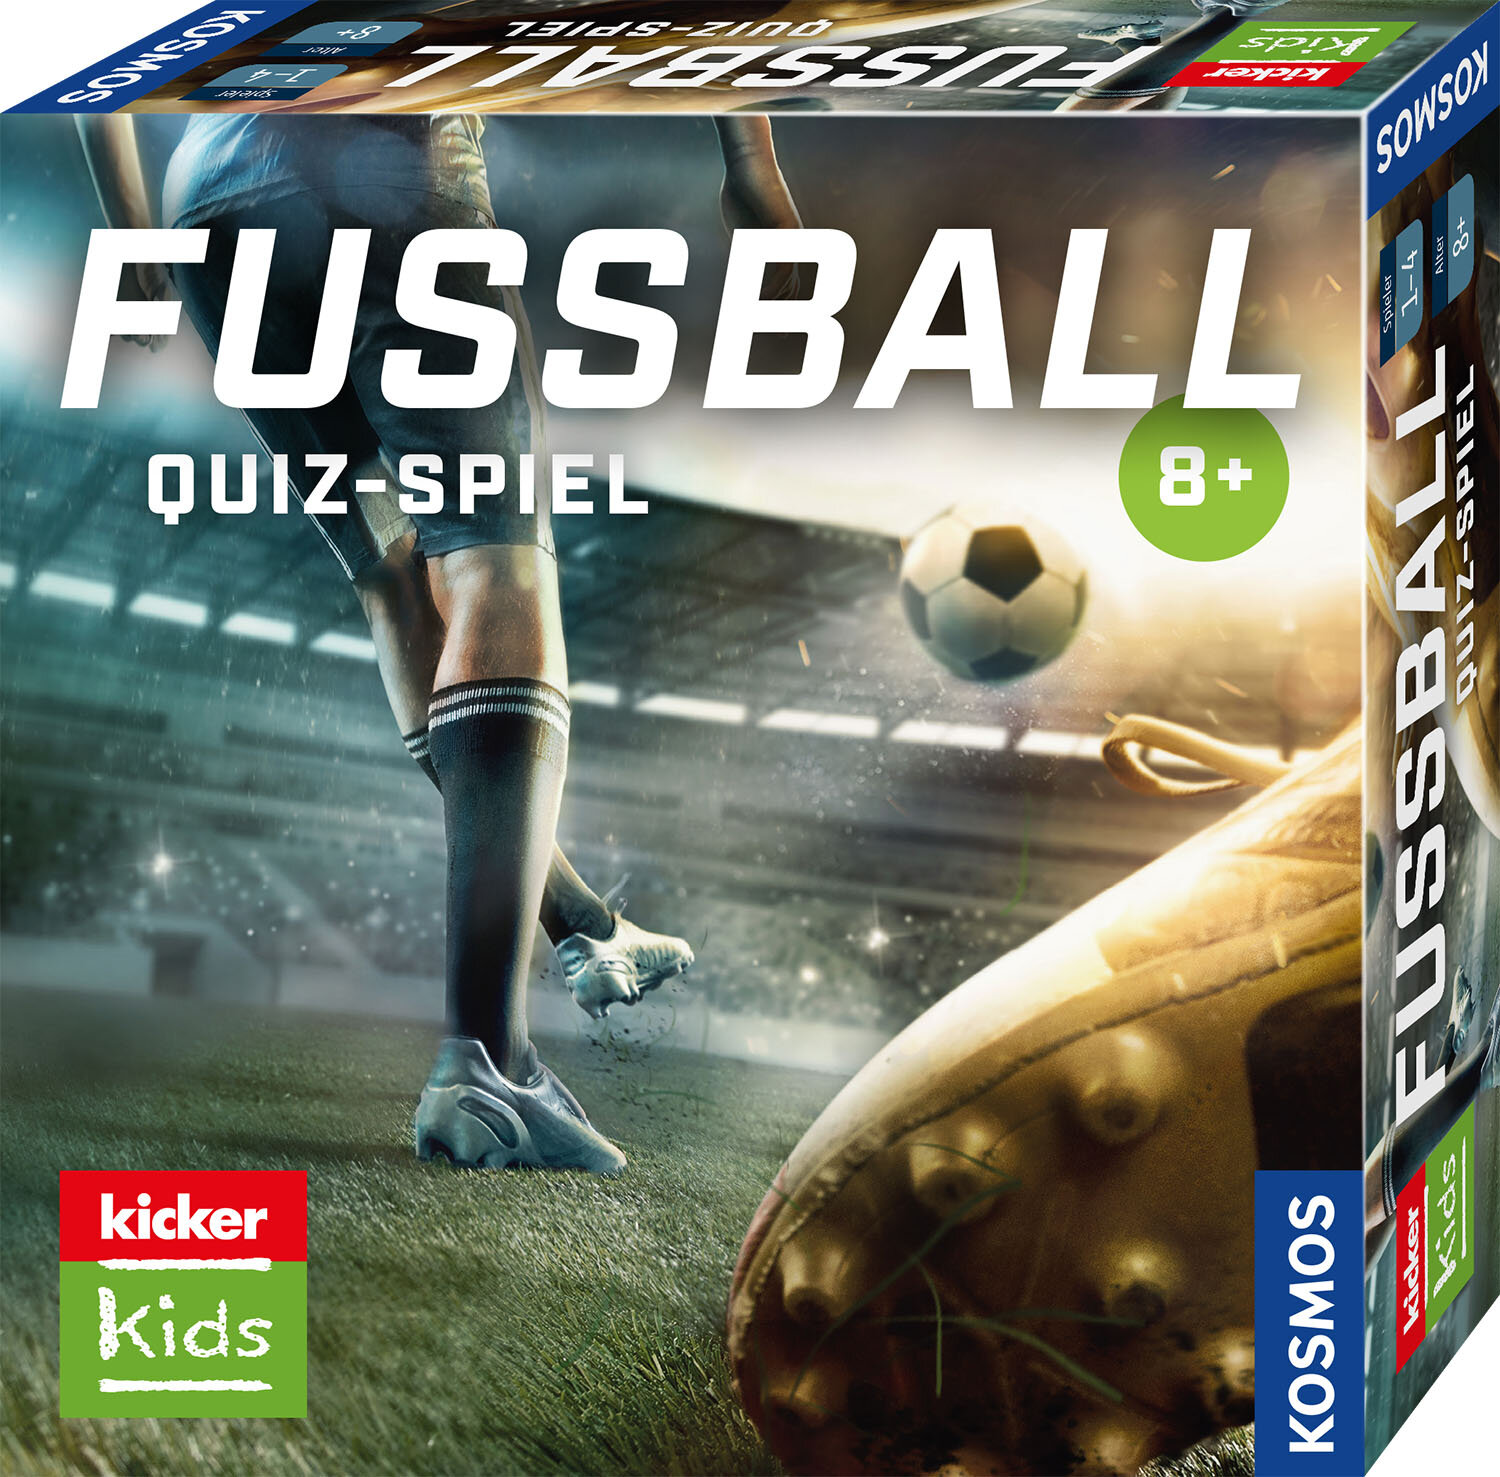 Kicker Kids - Fußball Quiz-Spiel